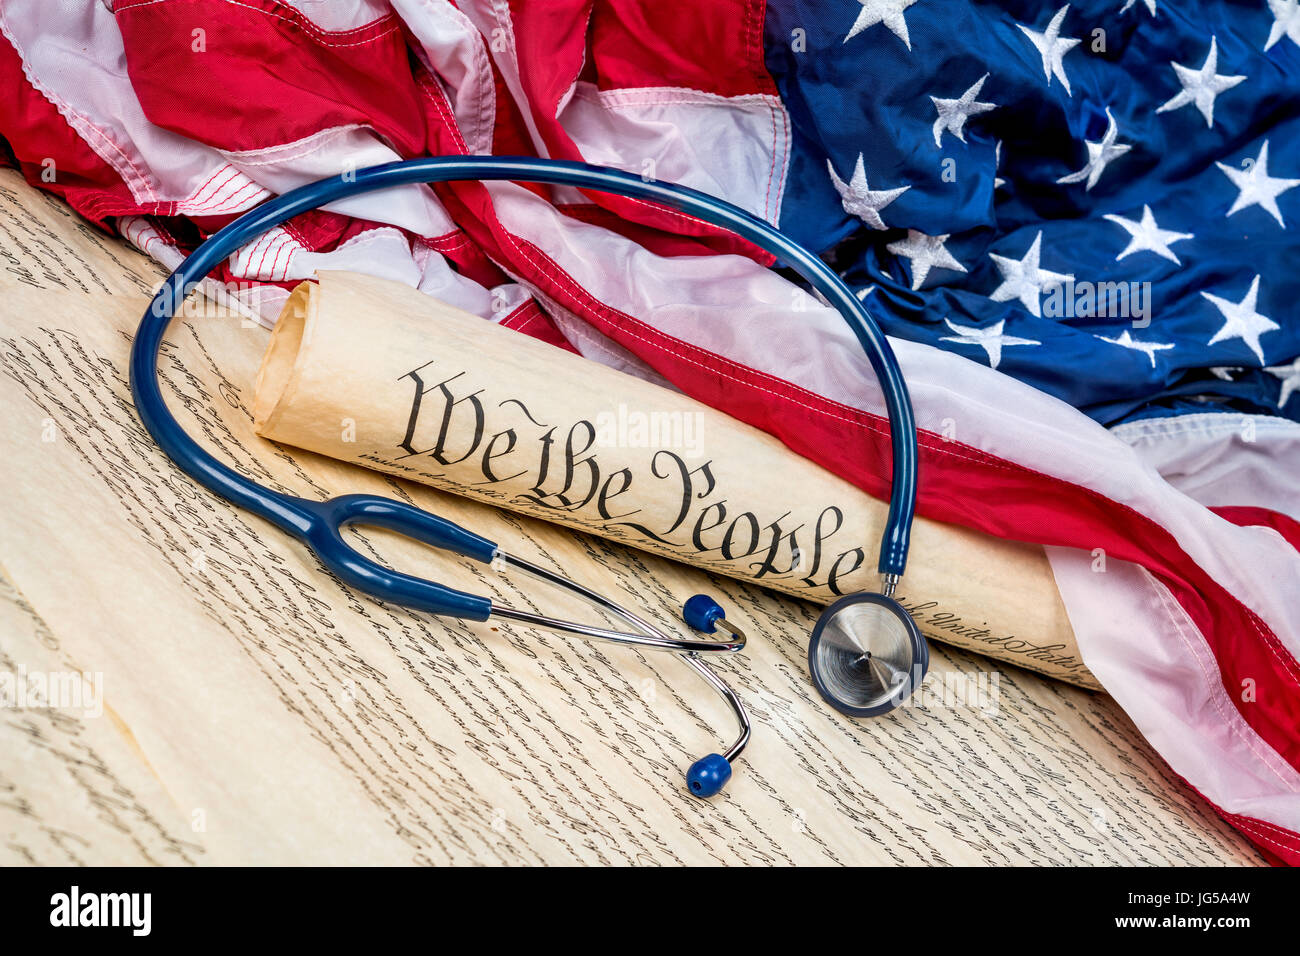 Verfassung der Vereinigten Staaten auf eine amerikanische Flagge mit einem medizinische Stethoskop symbolisiert die Notwendigkeit für eine gute Gesundheitsversorgung aufgerollt Stockfoto